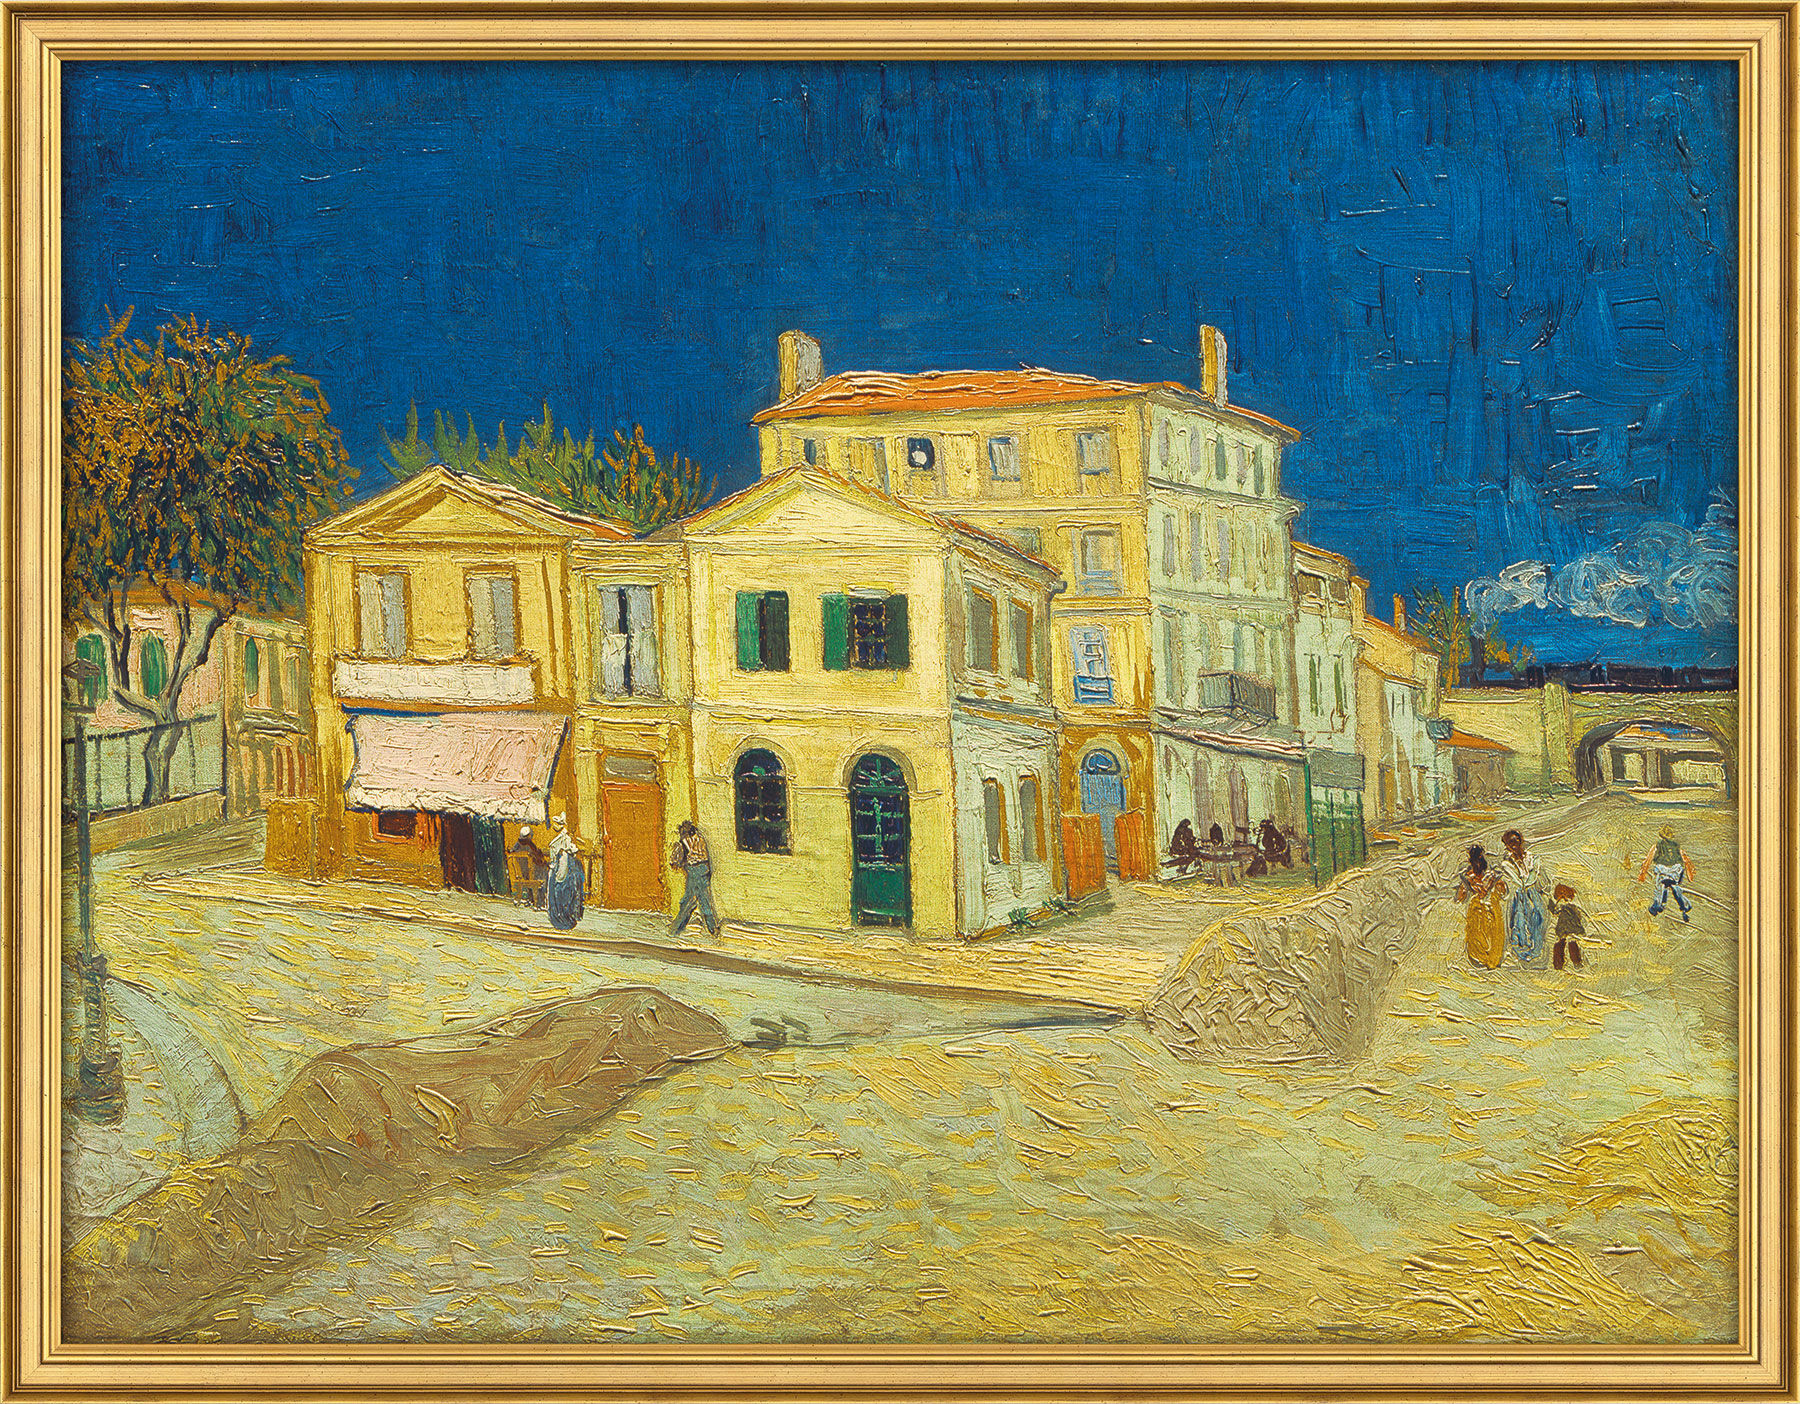 Beeld "Het gele huis" (1888), ingelijst von Vincent van Gogh